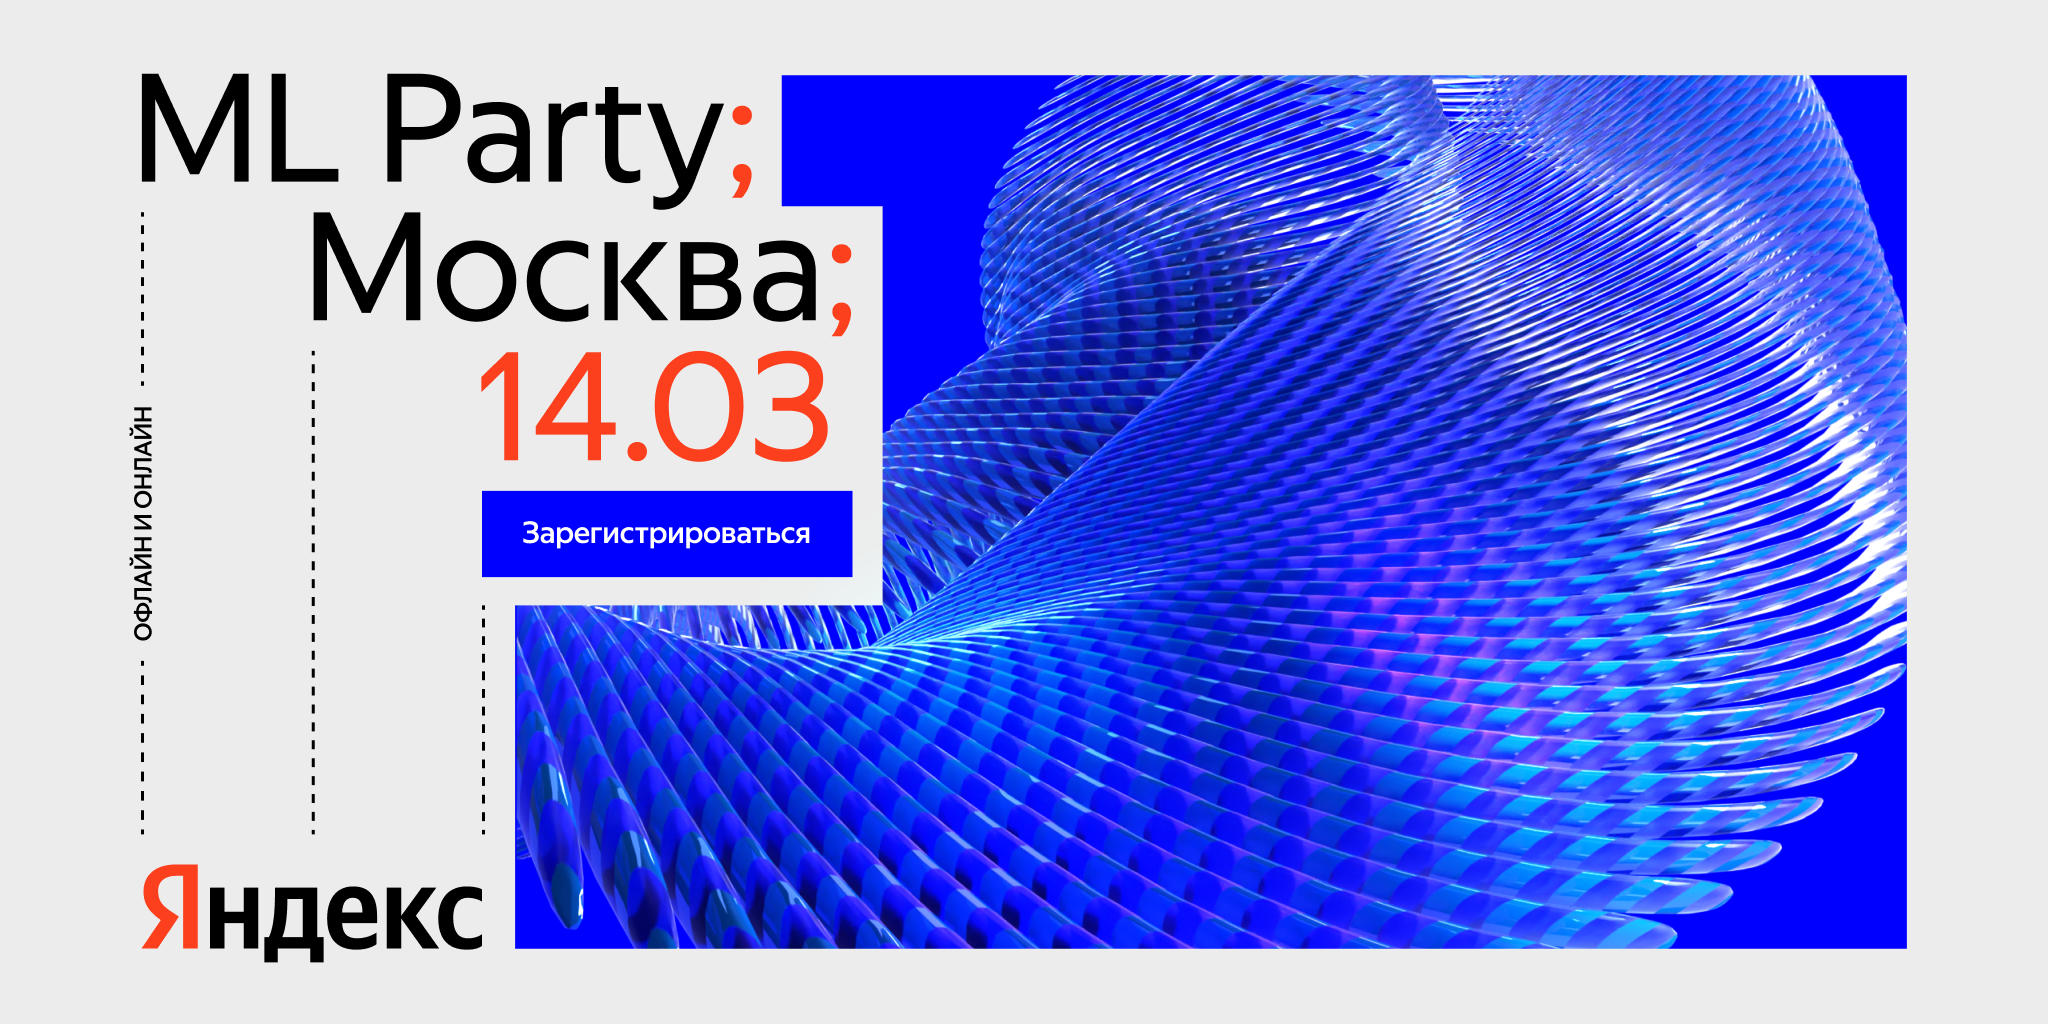 Обложка мероприятия ML Party от Яндекса